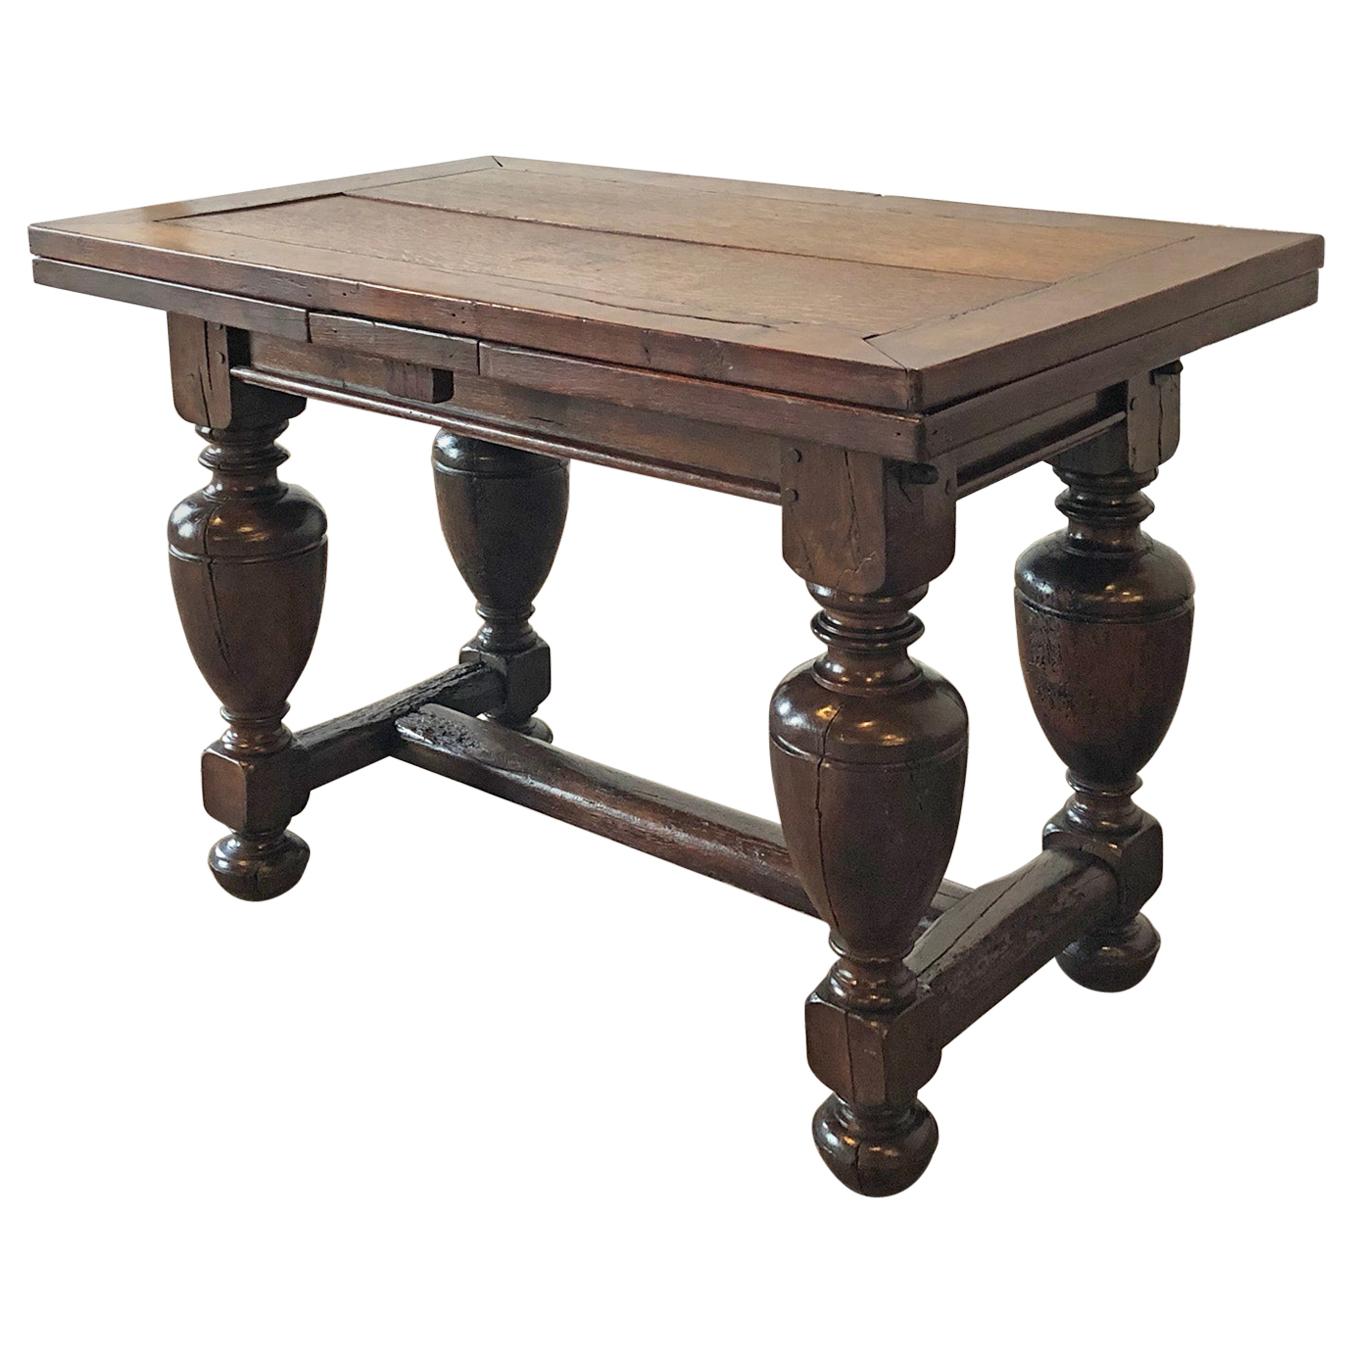 Niederländischer Barocktisch aus Eichenholz des 17. Jahrhunderts mit blattförmigem Mitteltisch